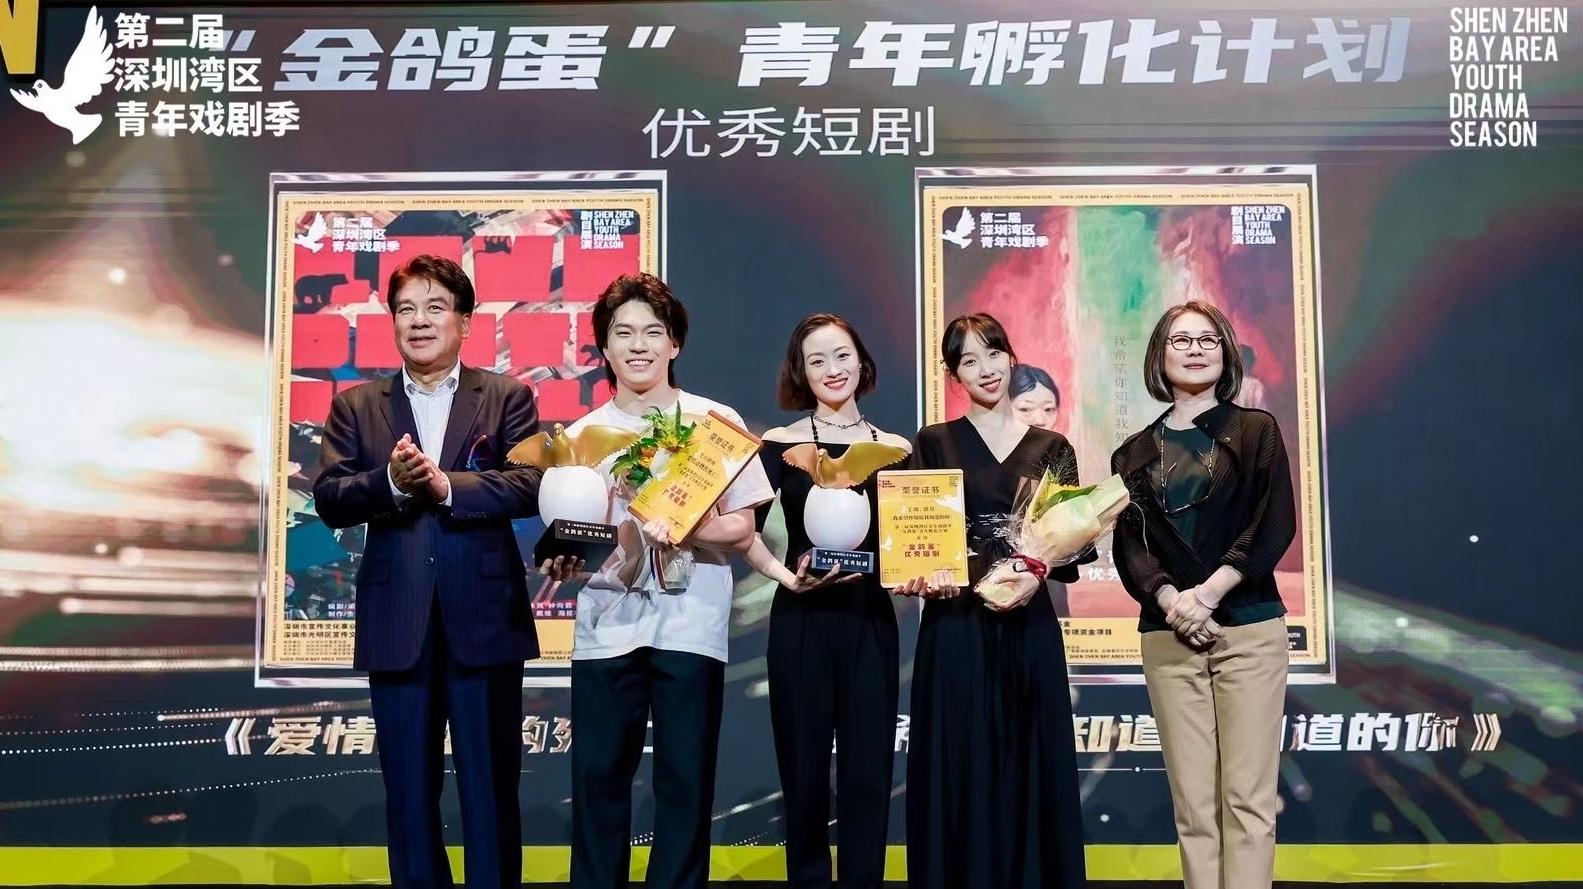 4部戏剧完成孵化并展演 第二届深圳湾区青年戏剧季迎来戏剧盛典